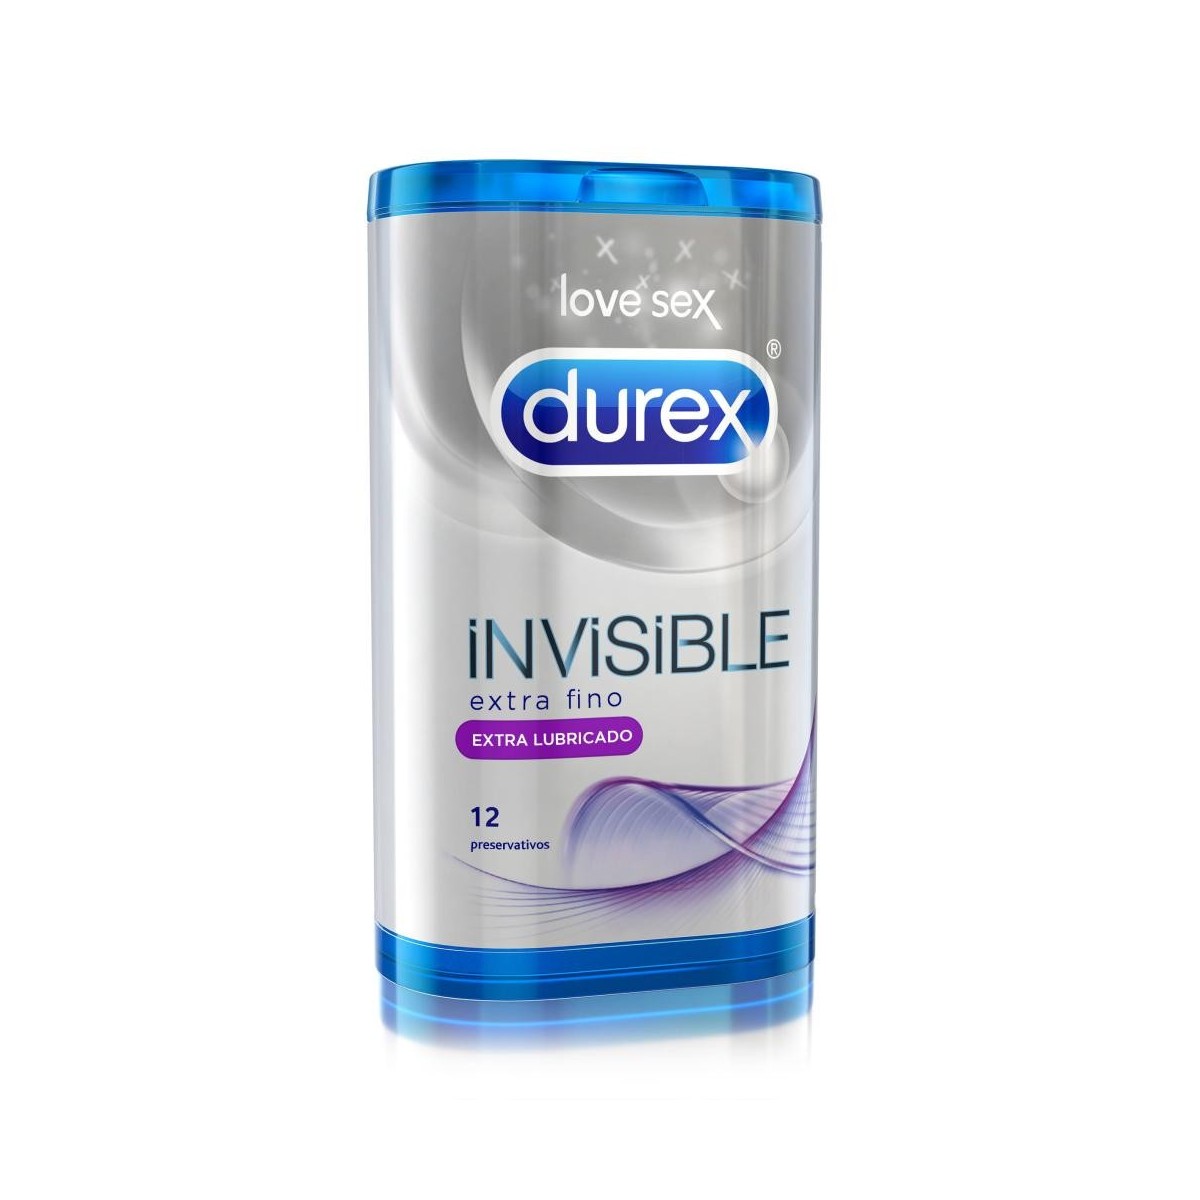 durex-invisible-extra-lubricado-12-preservativos